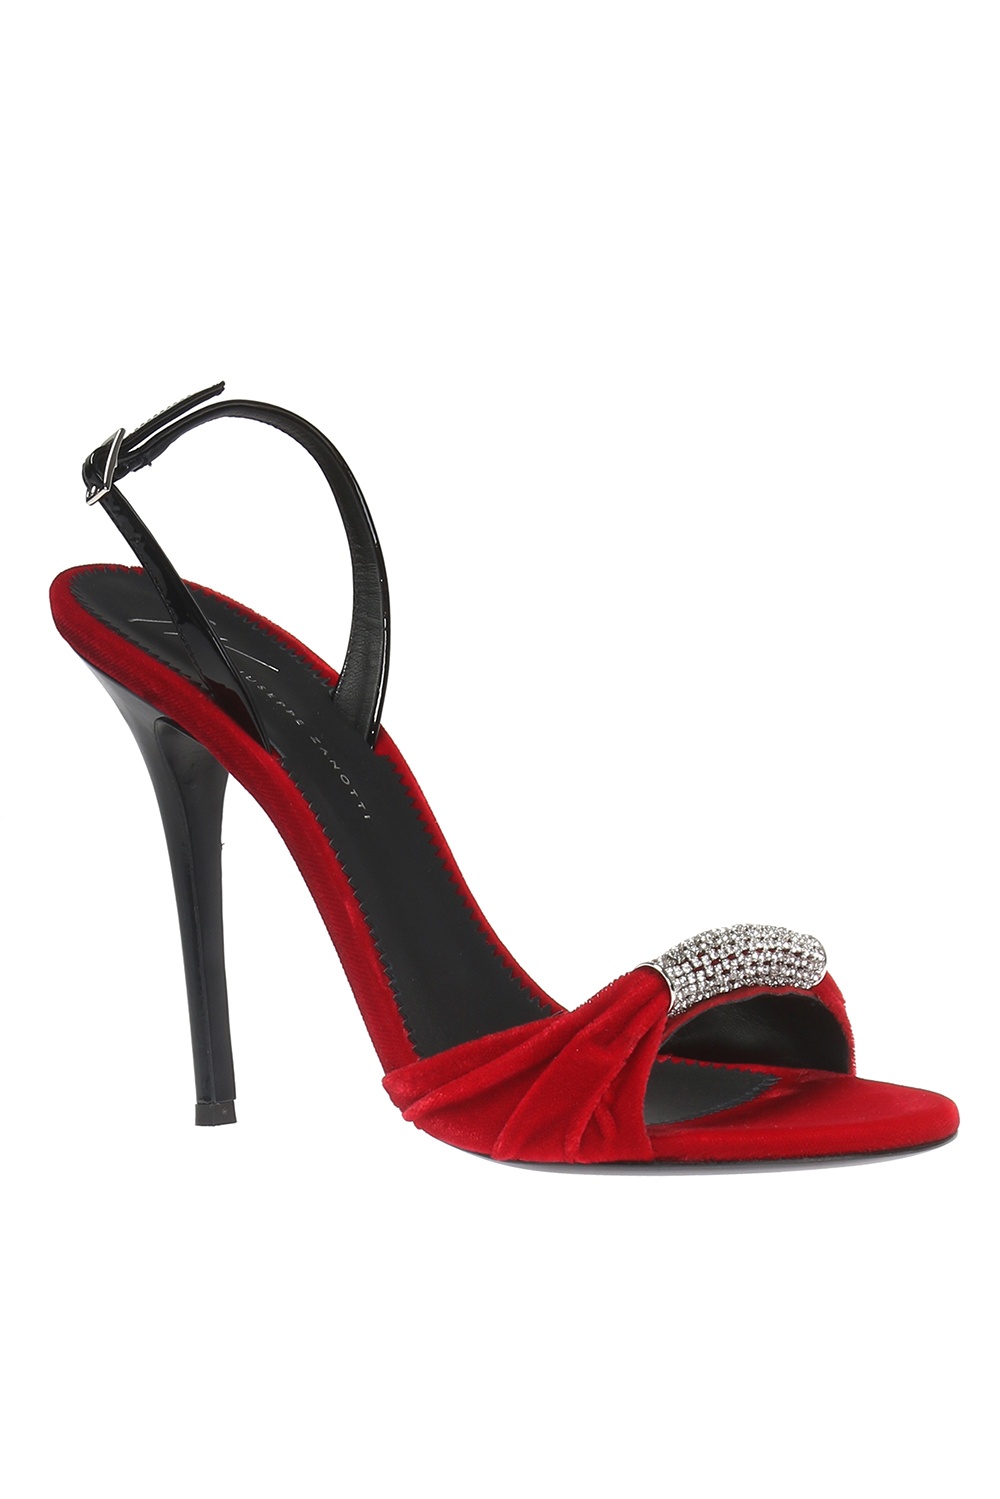 ‘Veronica’ stiletto sandals Giuseppe Zanotti - Vitkac Spain